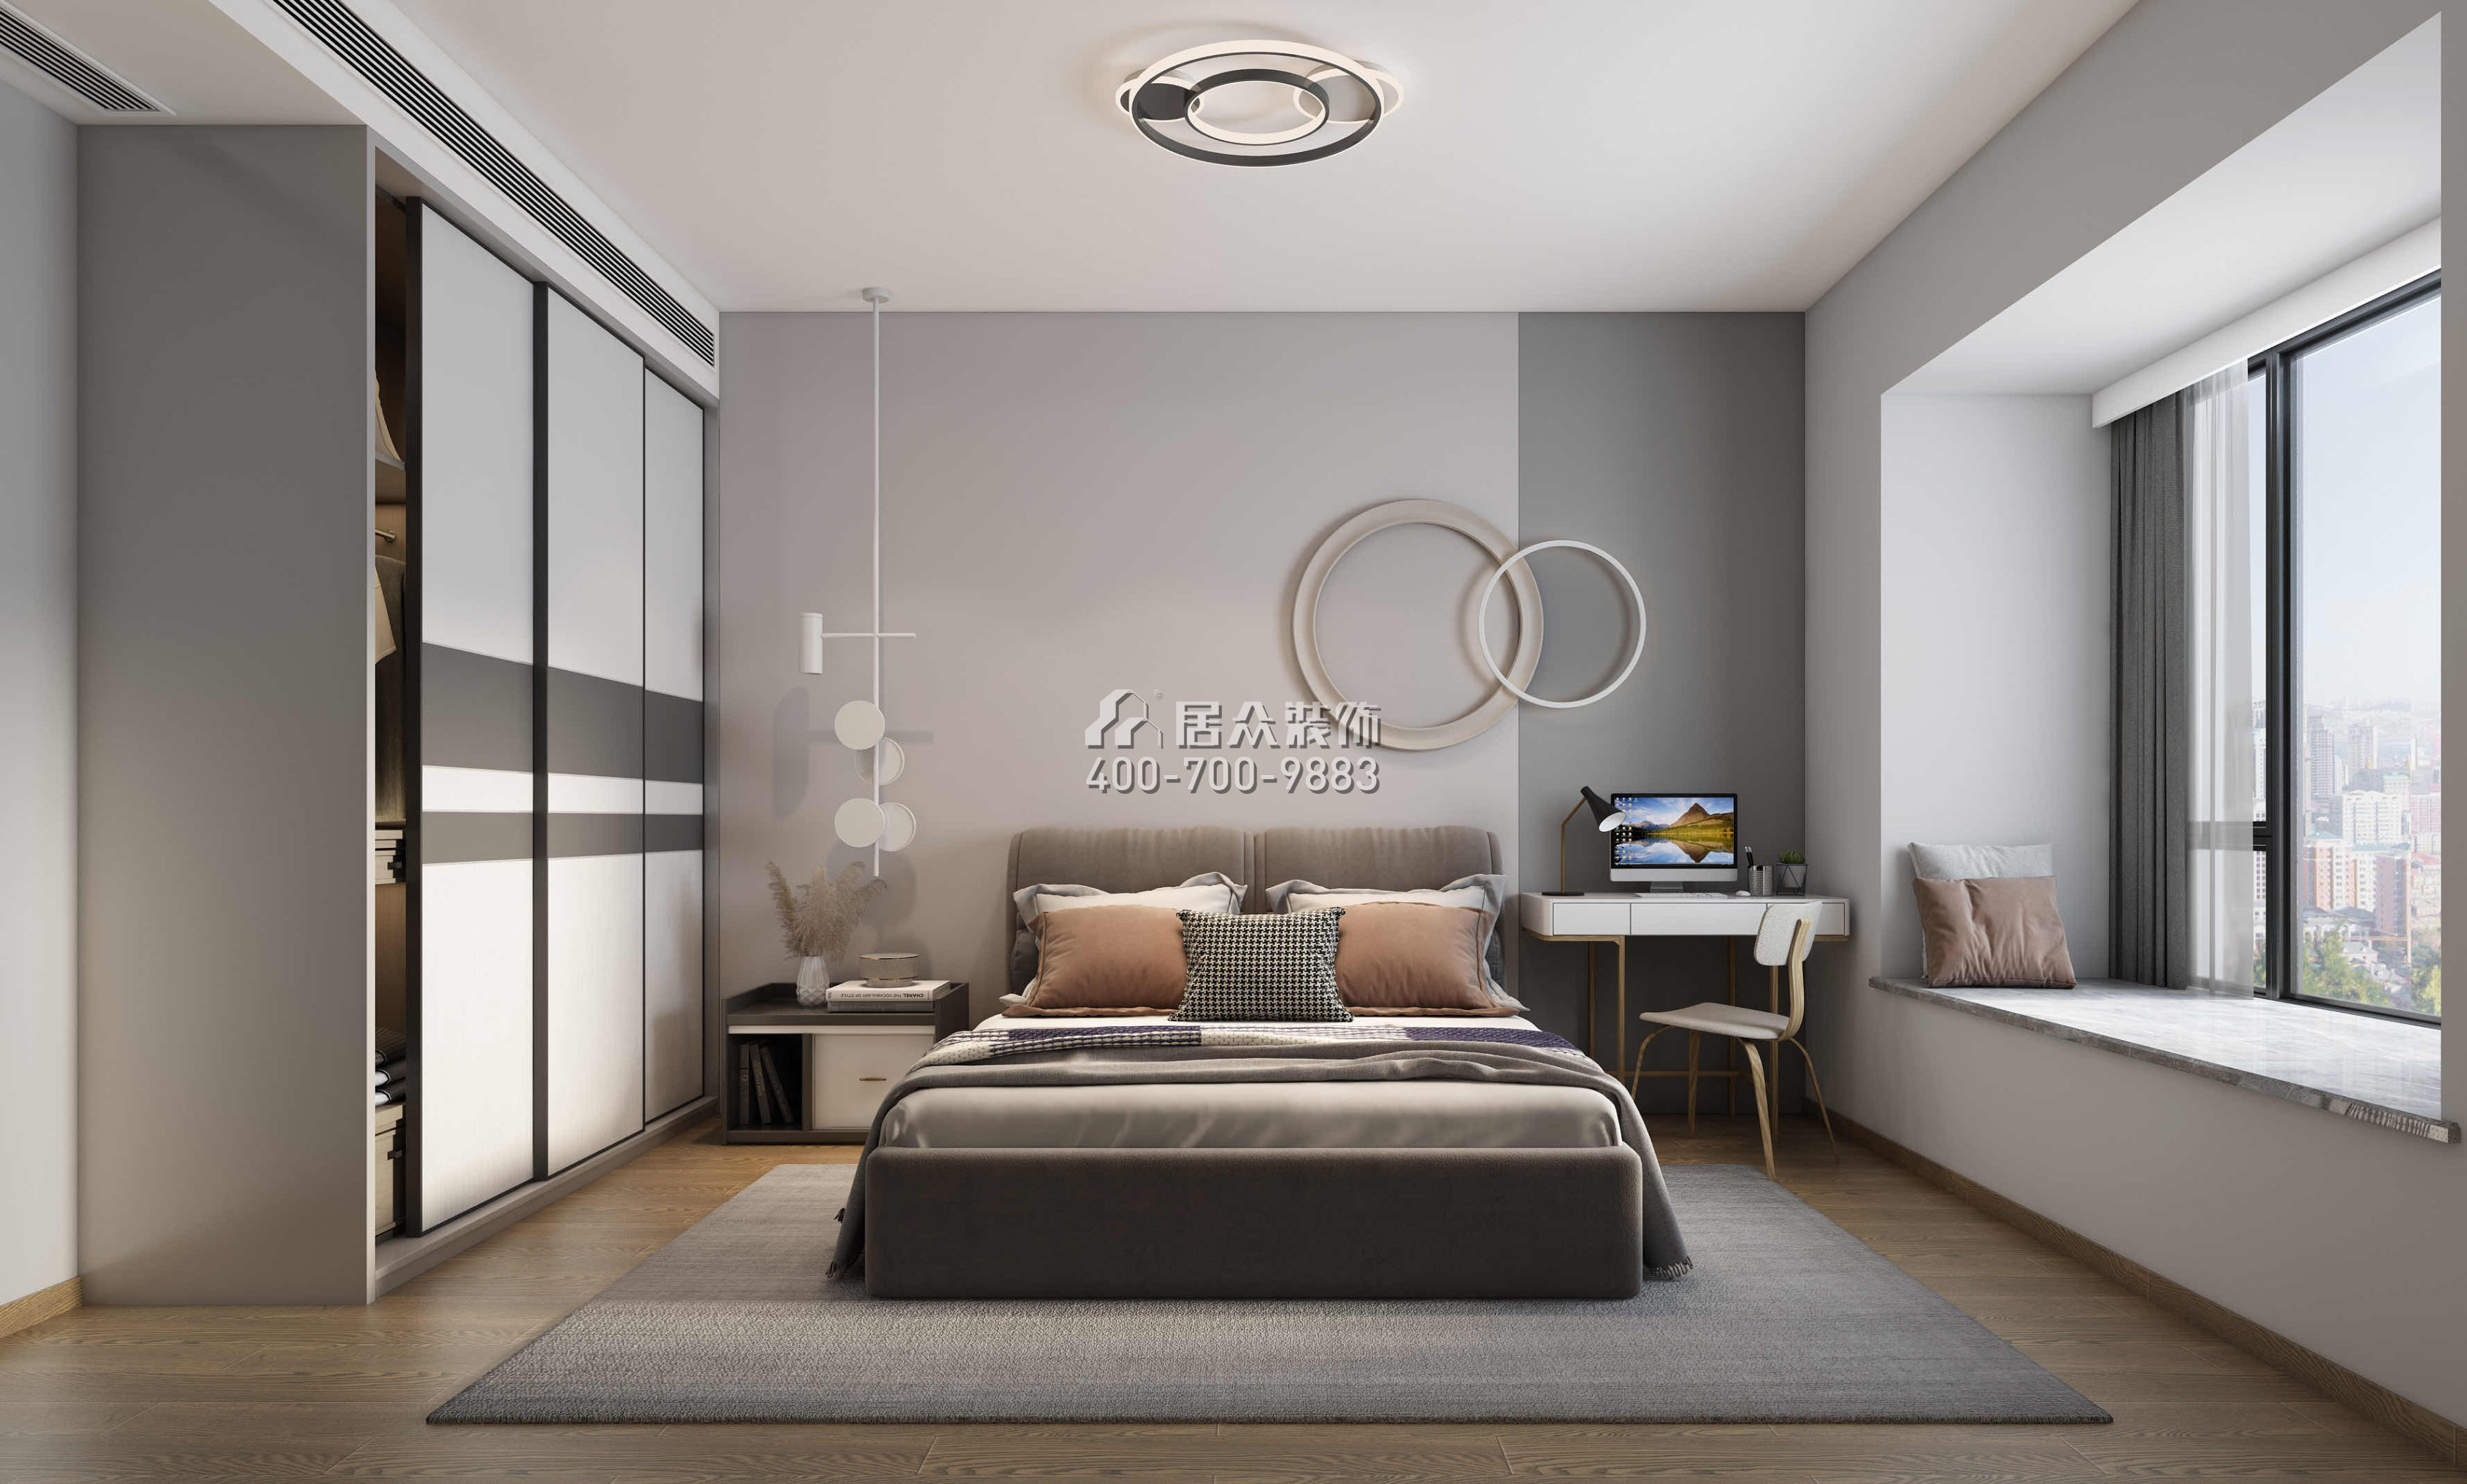 星河丹堤145平方米现代简约风格平层户型卧室装修效果图